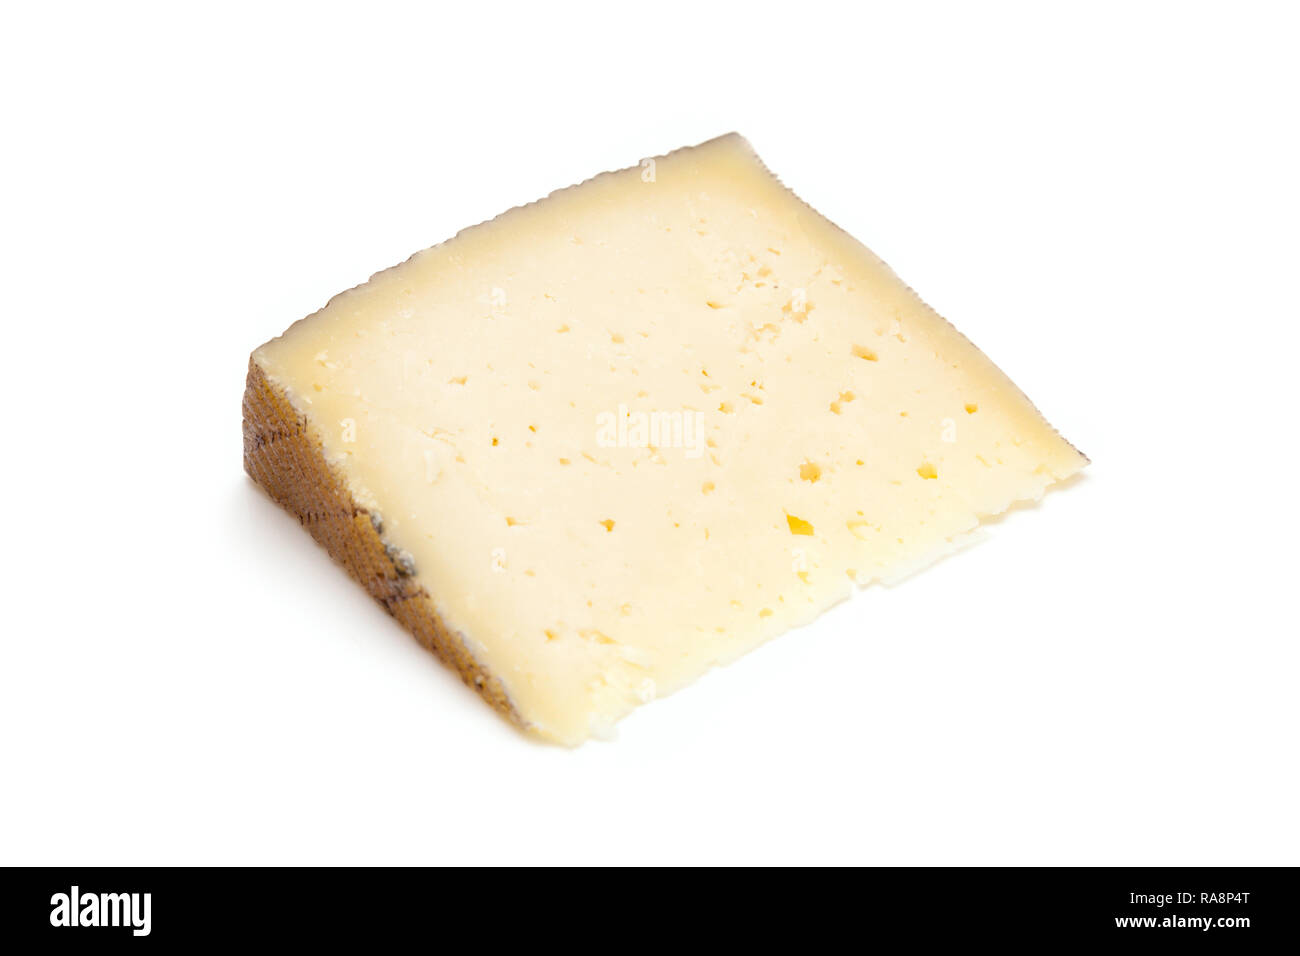 Fromage Manchego espagnol fabriqué à partir du lait de brebis qu'il a une texture crémeuse et ferme, isolated on a white background studio. Banque D'Images